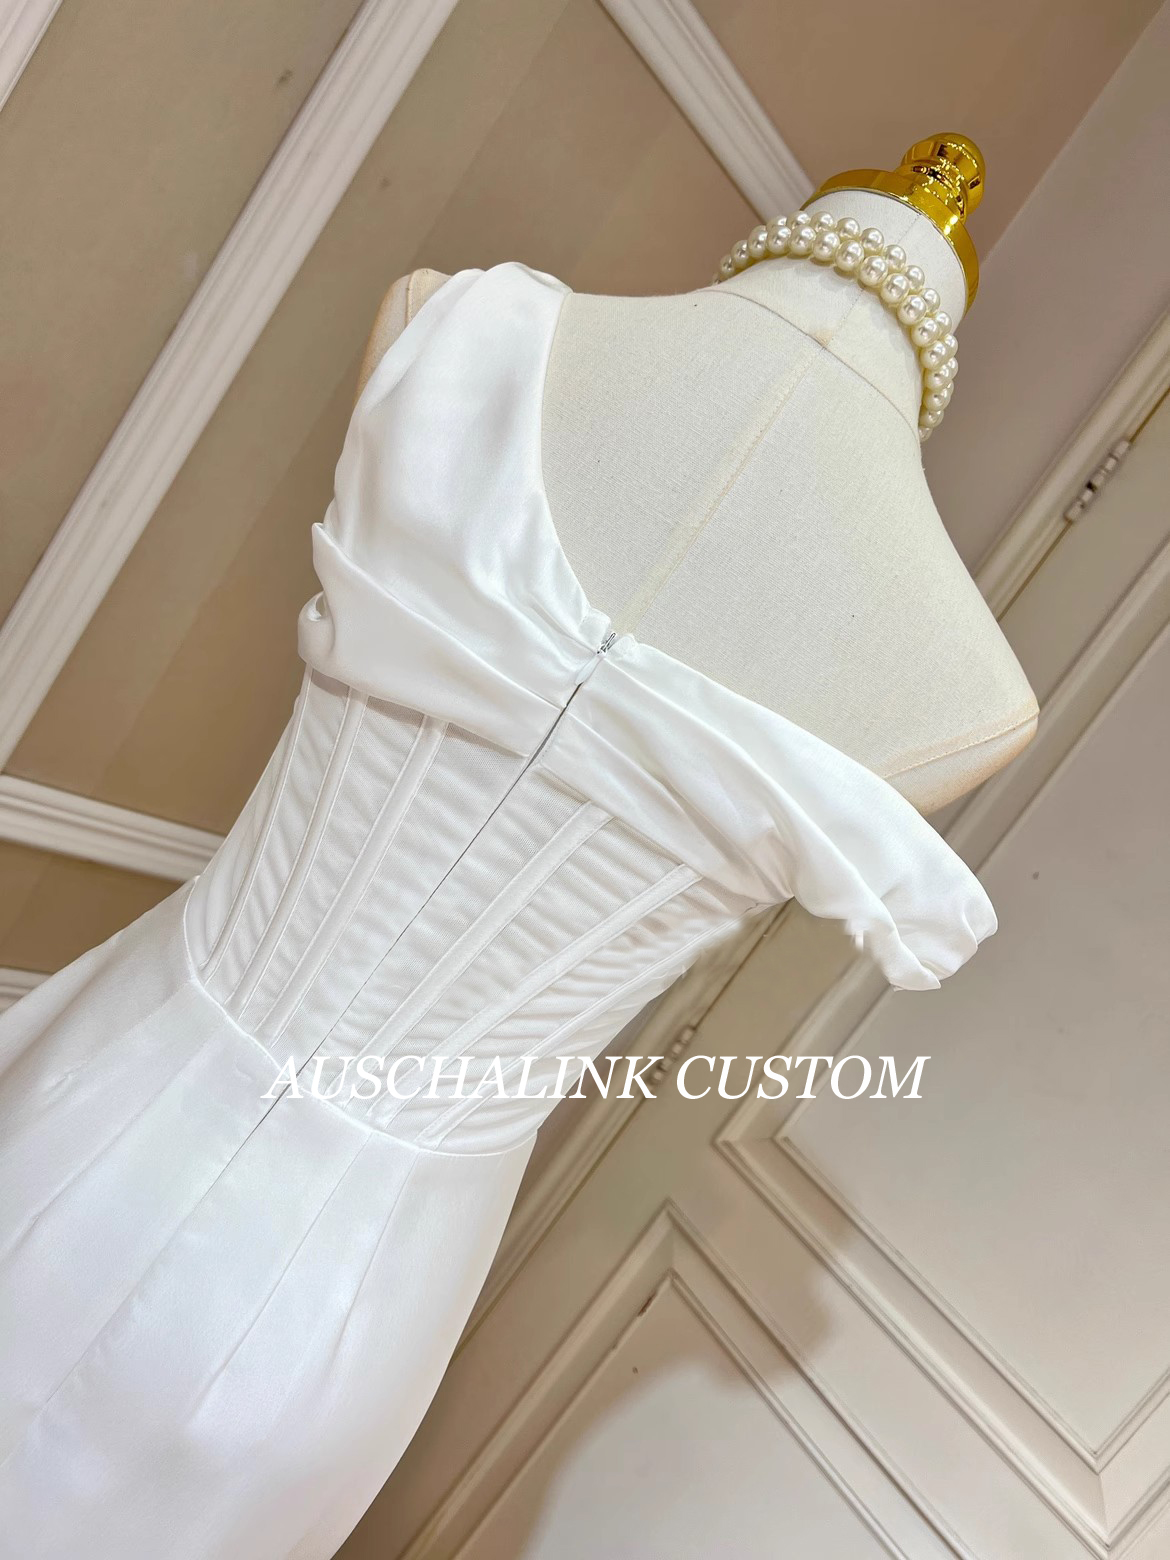 Manifattur tal-ODM Nisa Dress Maker (6)